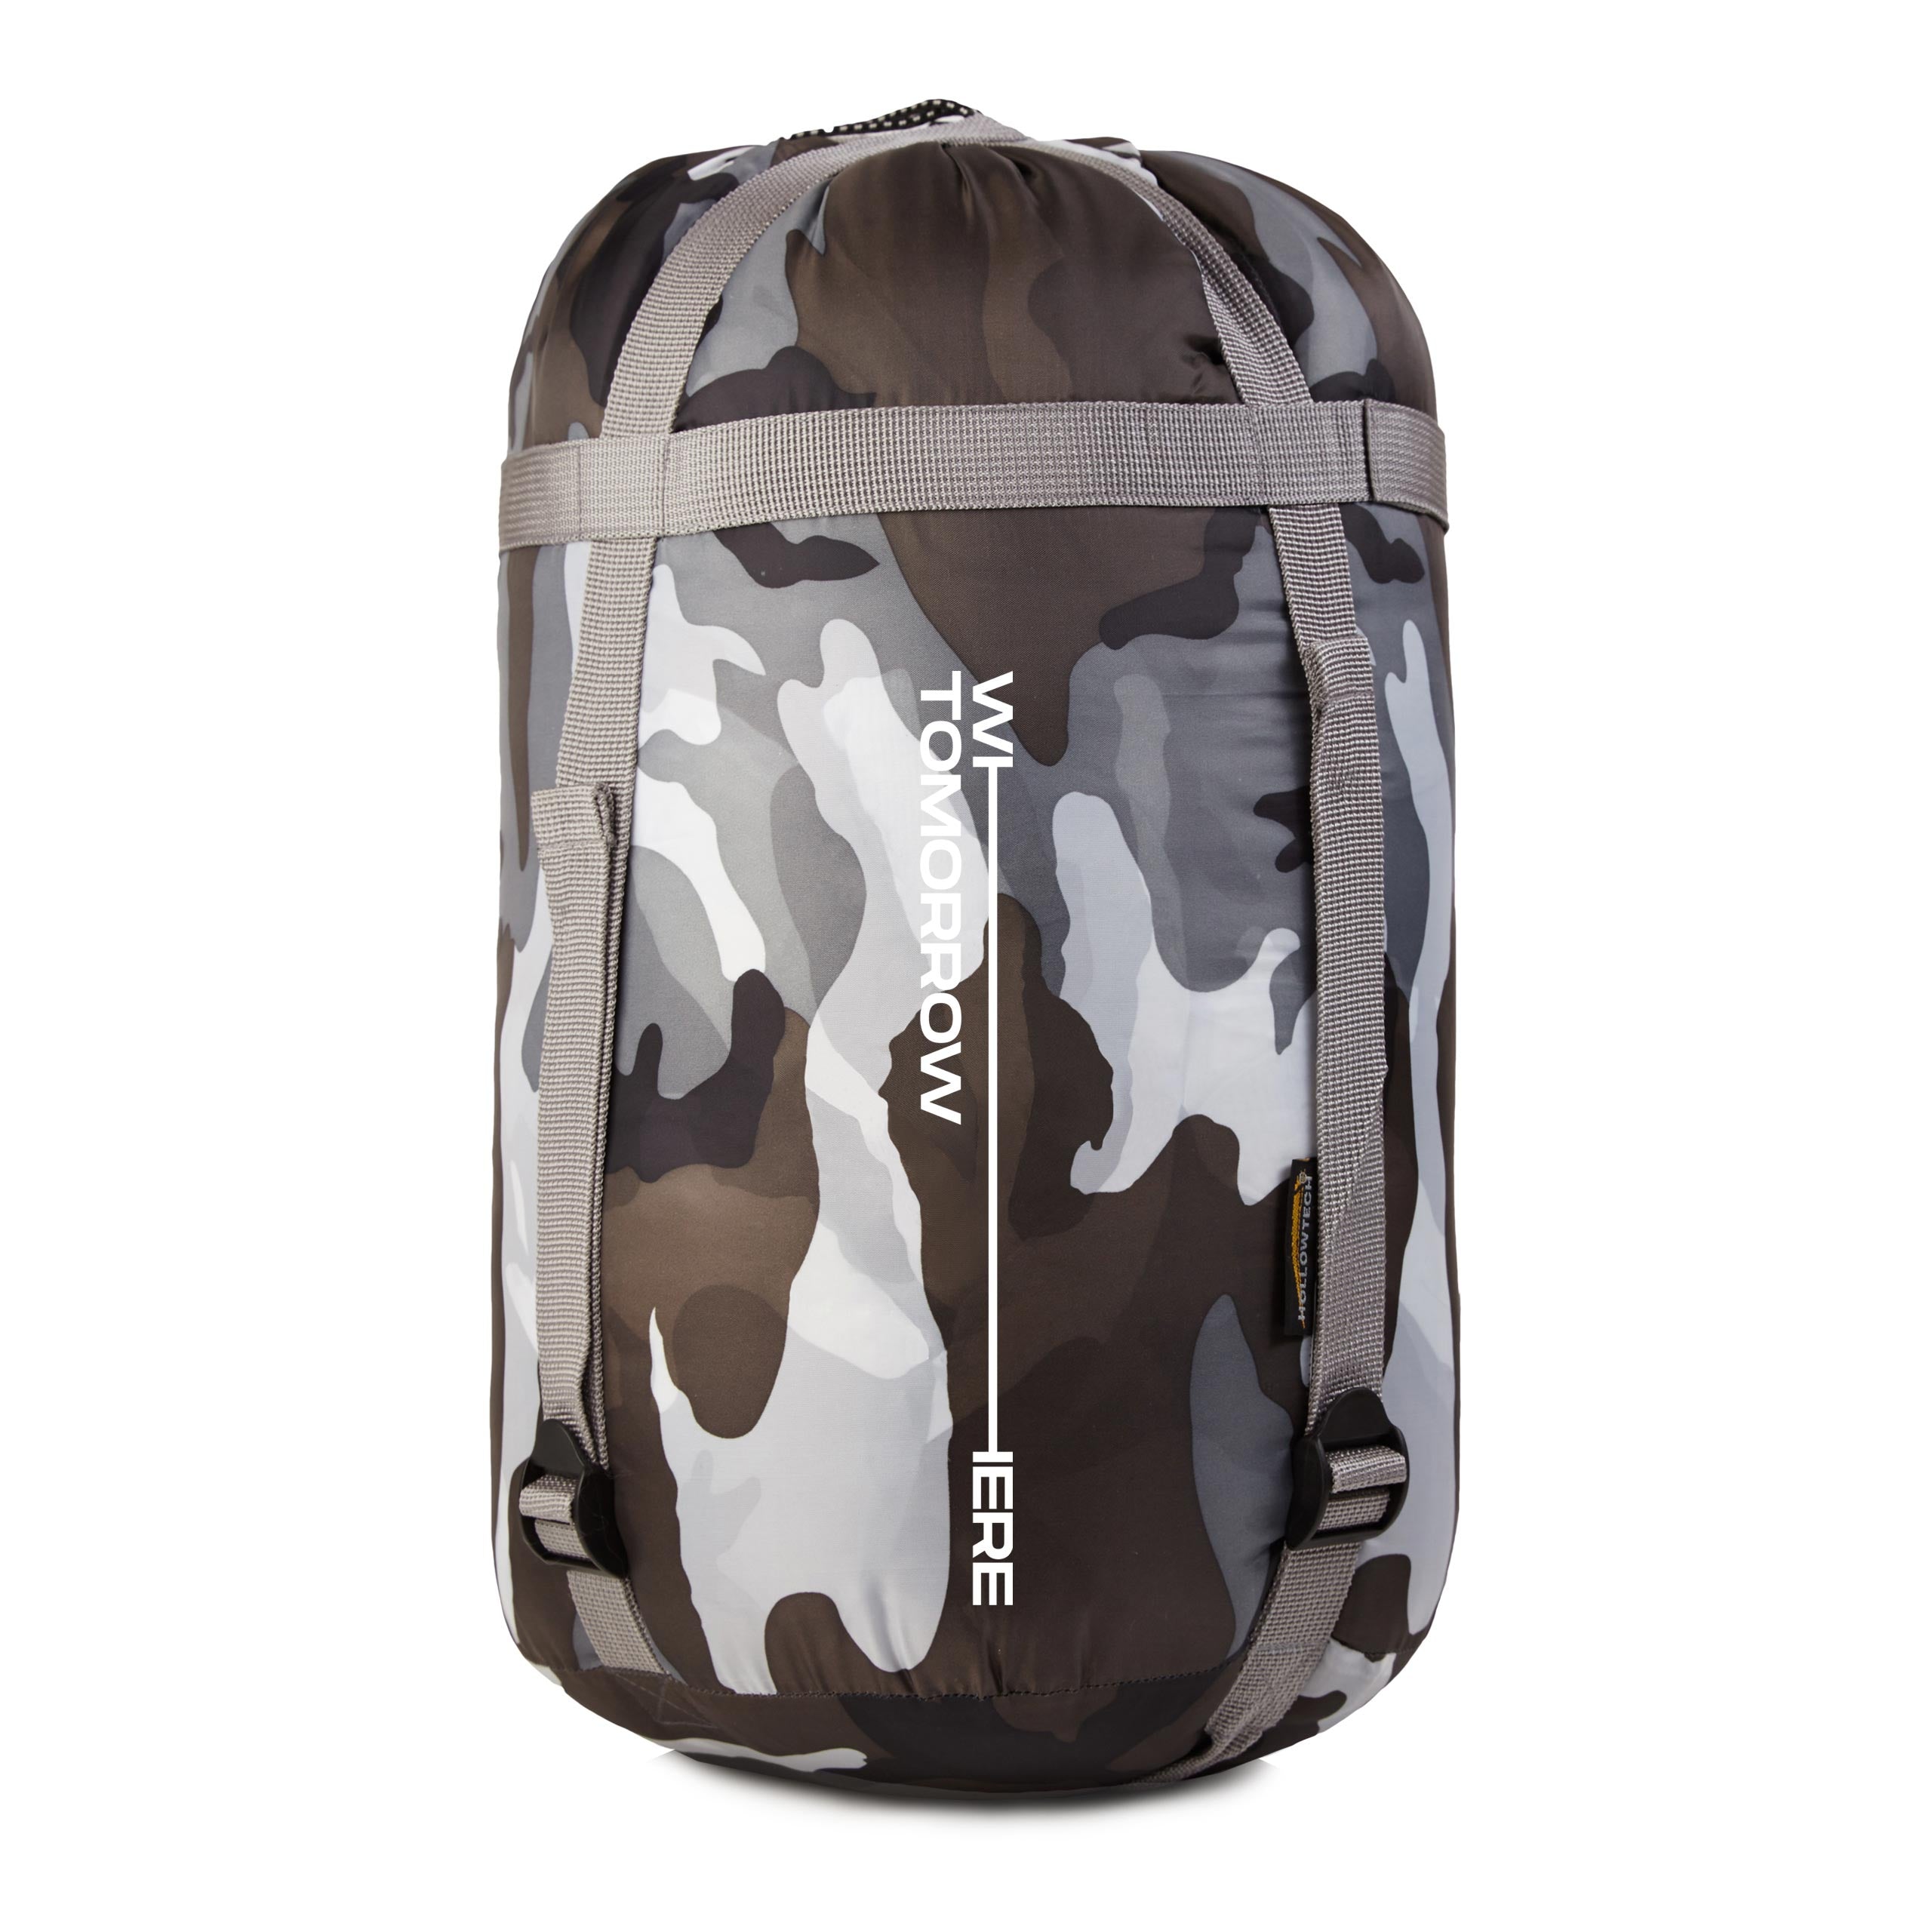 Camping Schlafsack Classic - Mumienschlafsack mit Tasche - 230 x 80 x 55 cm - Camouflage Grau